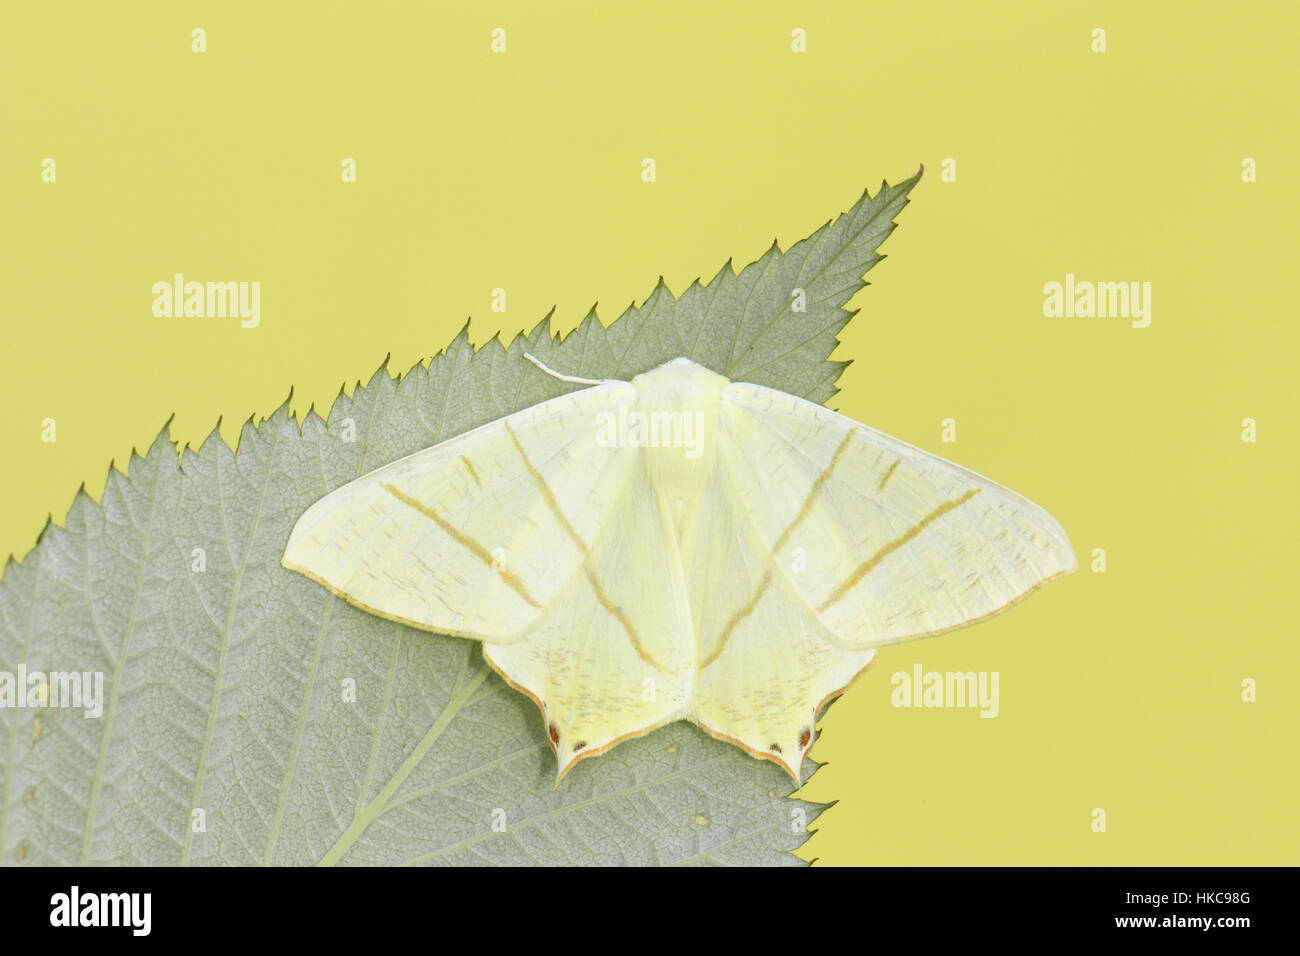 Milan à queue fourchue (Ourapteryx sambucaria) - une espèce de jaune pâle de l'été, sur une feuille verte dans un jardin de banlieue Banque D'Images